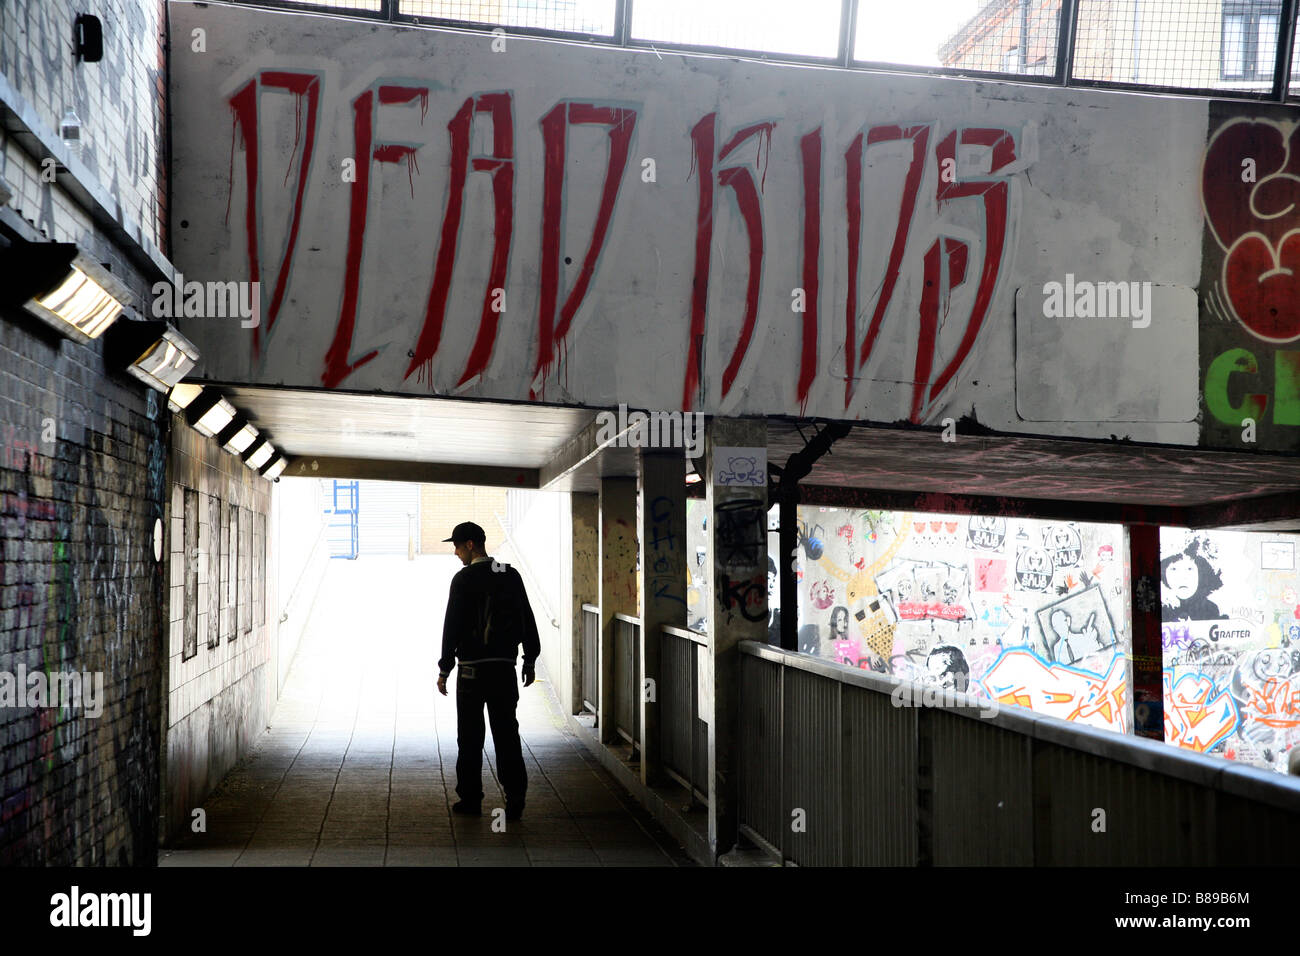 Youth walking under graffiti that reads DEAD KIDS, Leake Street, Waterloo, London Stock Photo